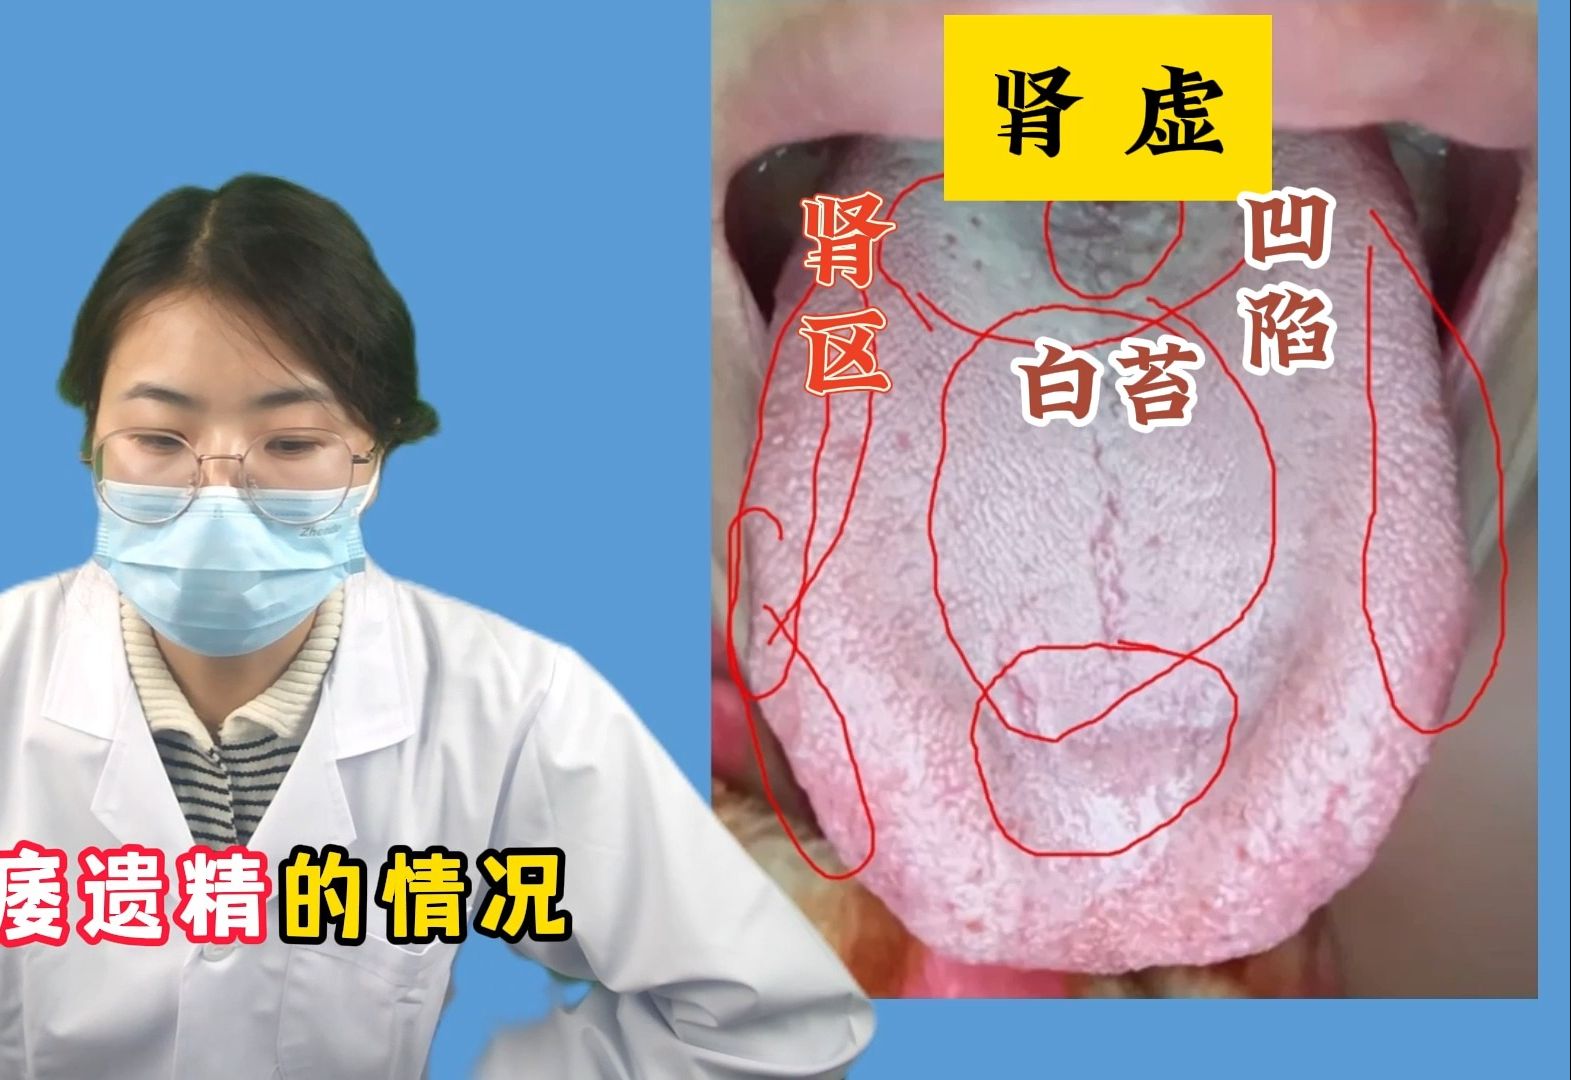 潘大夫舌诊：舌根像铺了一层面粉，并且有条裂纹，肾功能指定弱啊